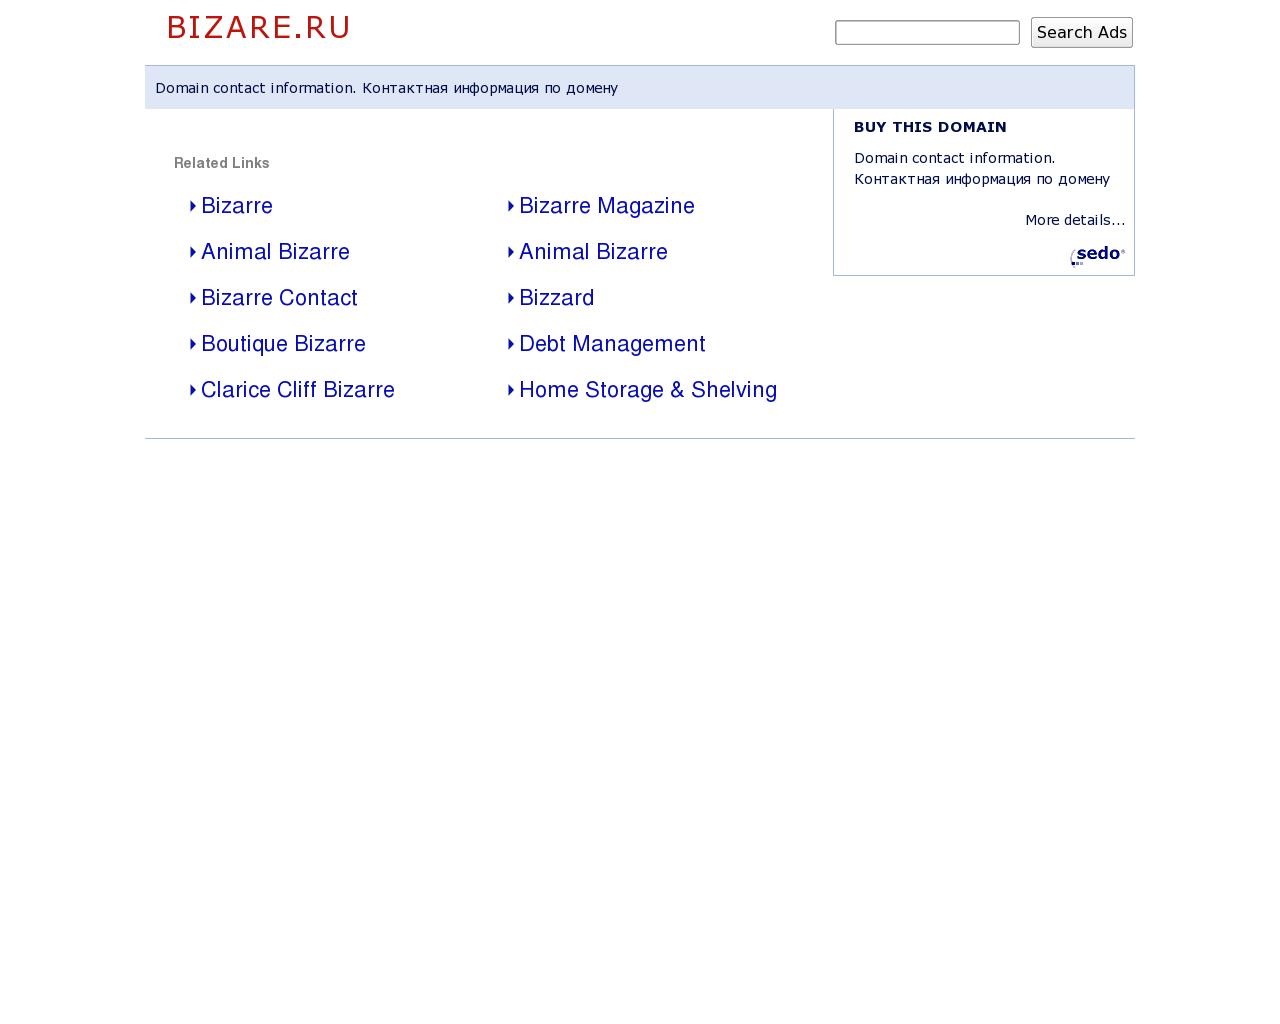 Изображение сайта bizare.ru в разрешении 1280x1024